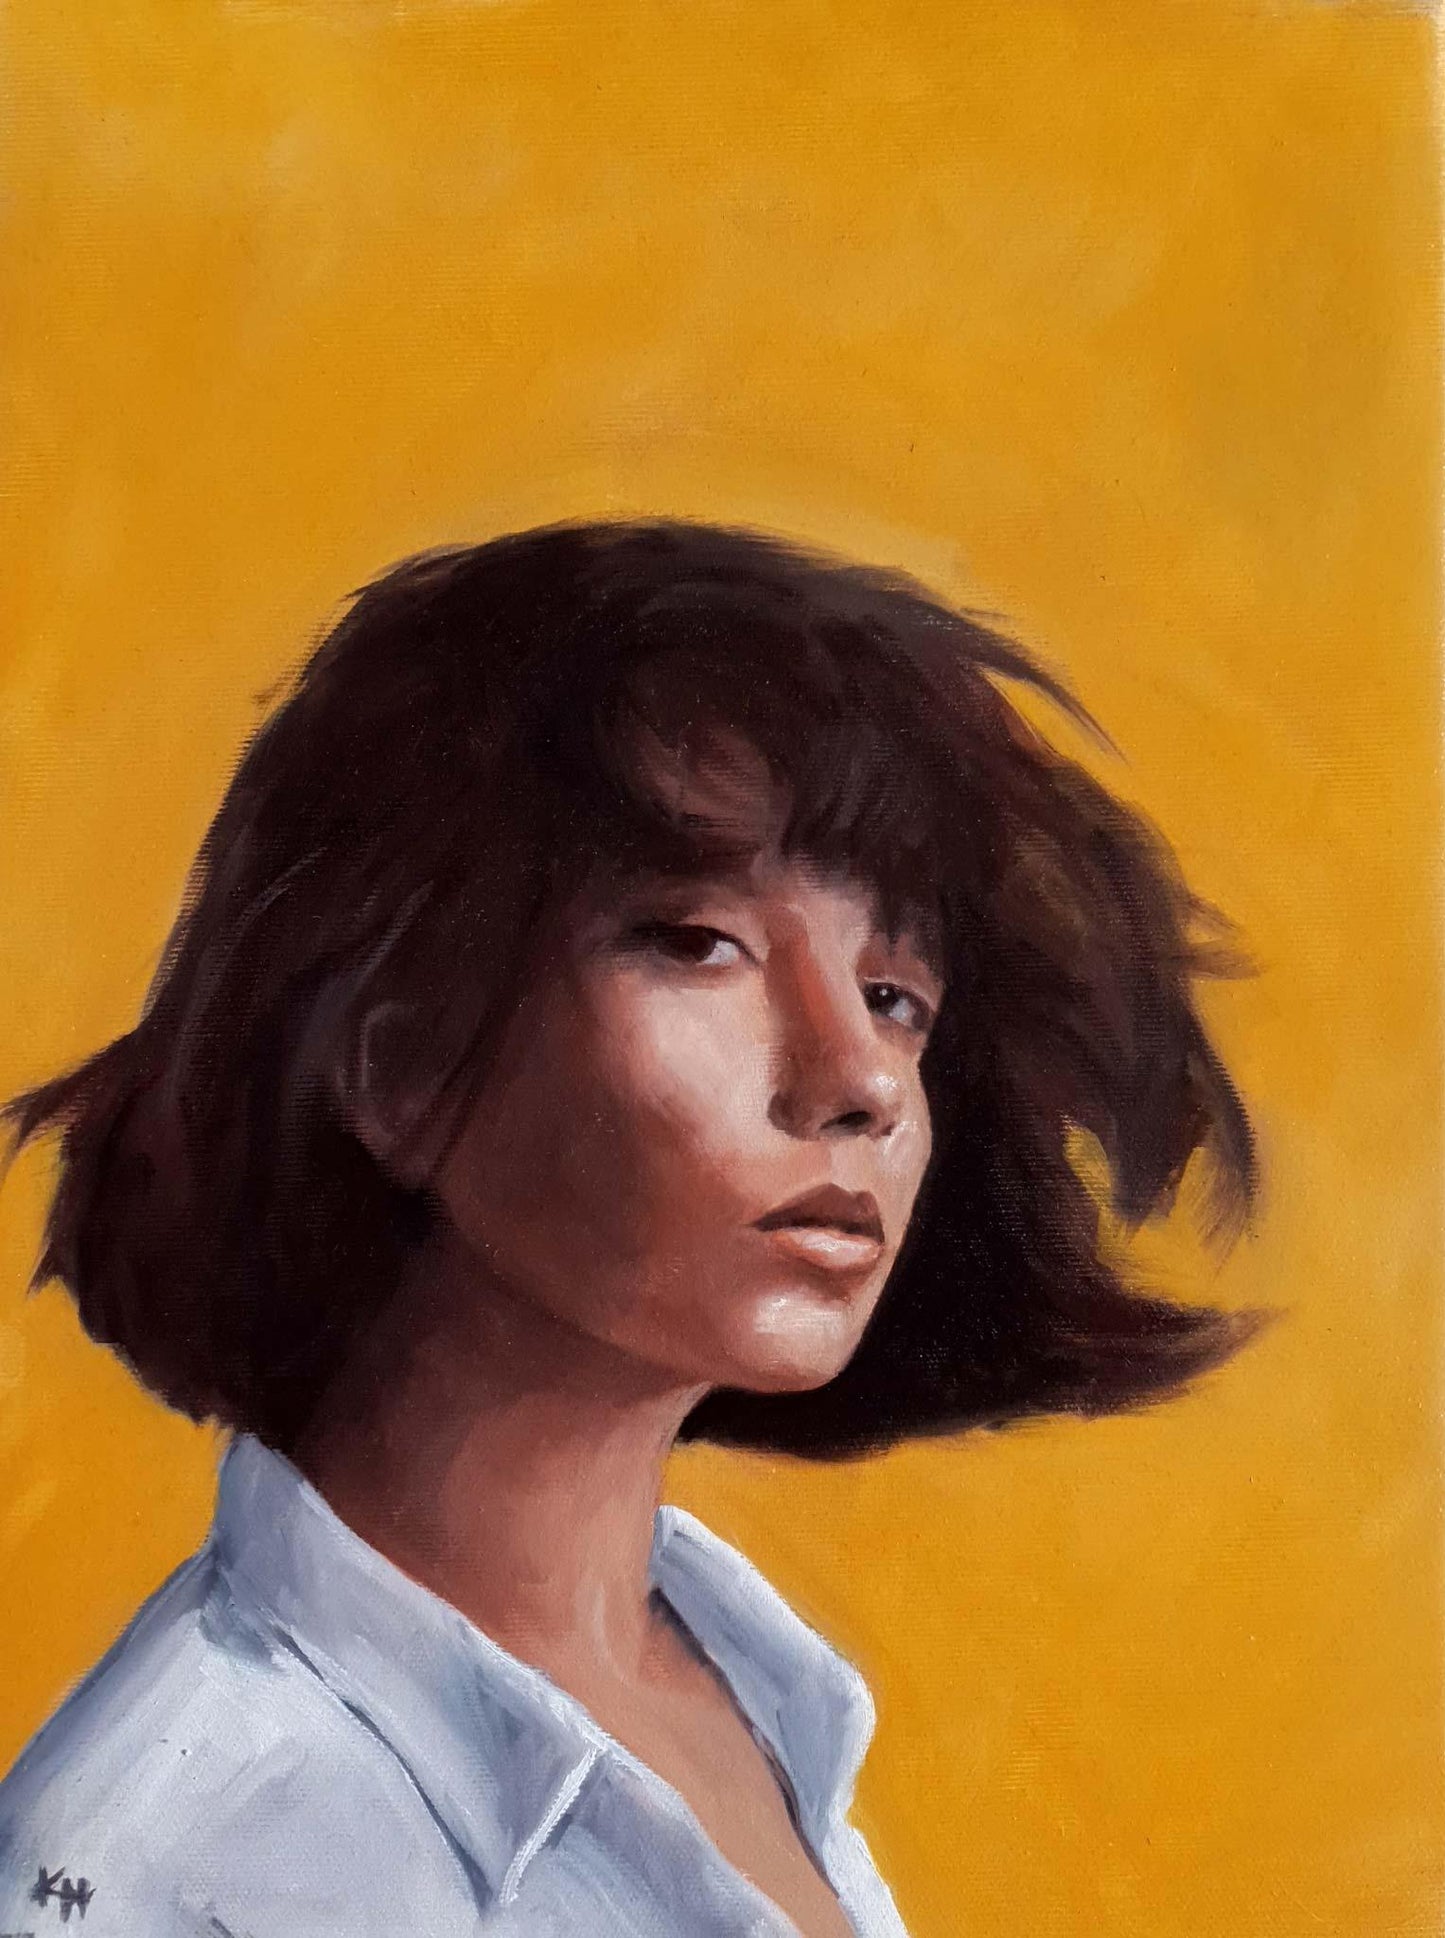 Portrait 1/100 #100headschallange - Kirsi Hallberg Art